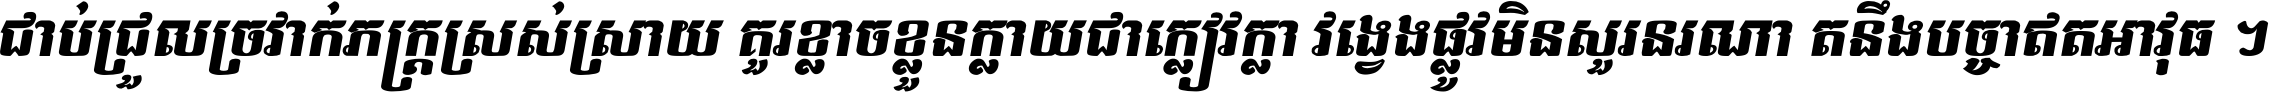 Kh Baphnom Limon F6 Italic